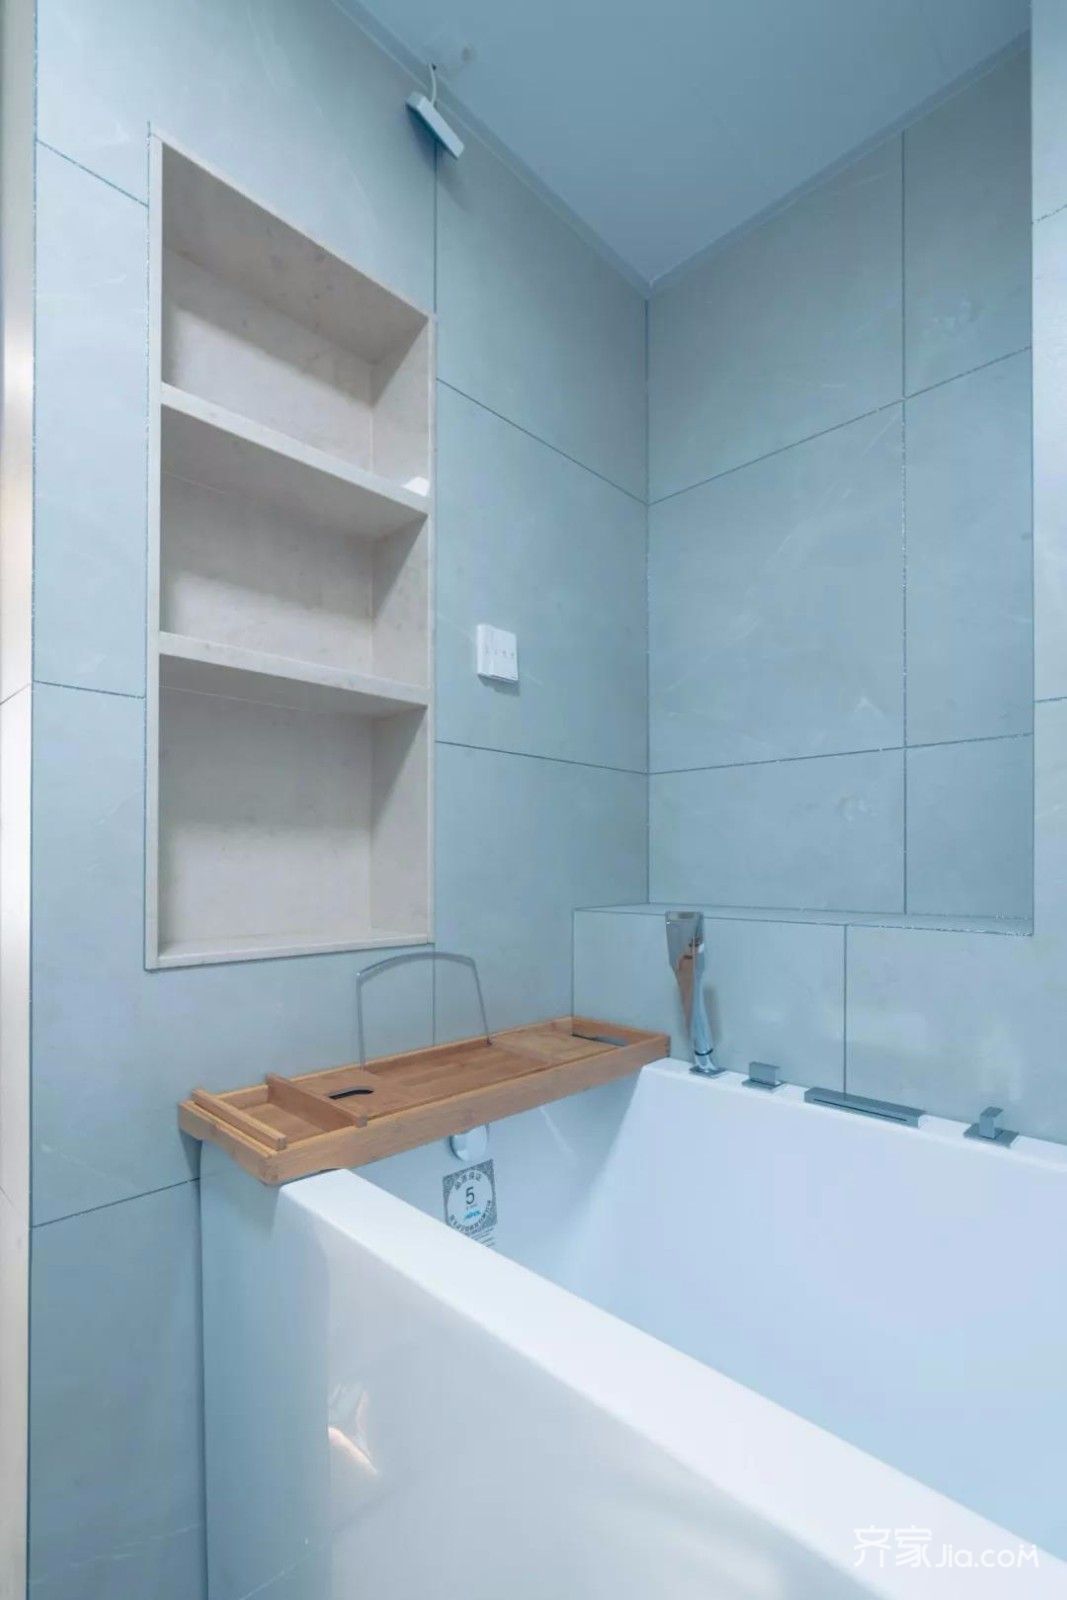 浴室延续了简洁明了的调性,壁龛用来提供放置洗护用品.